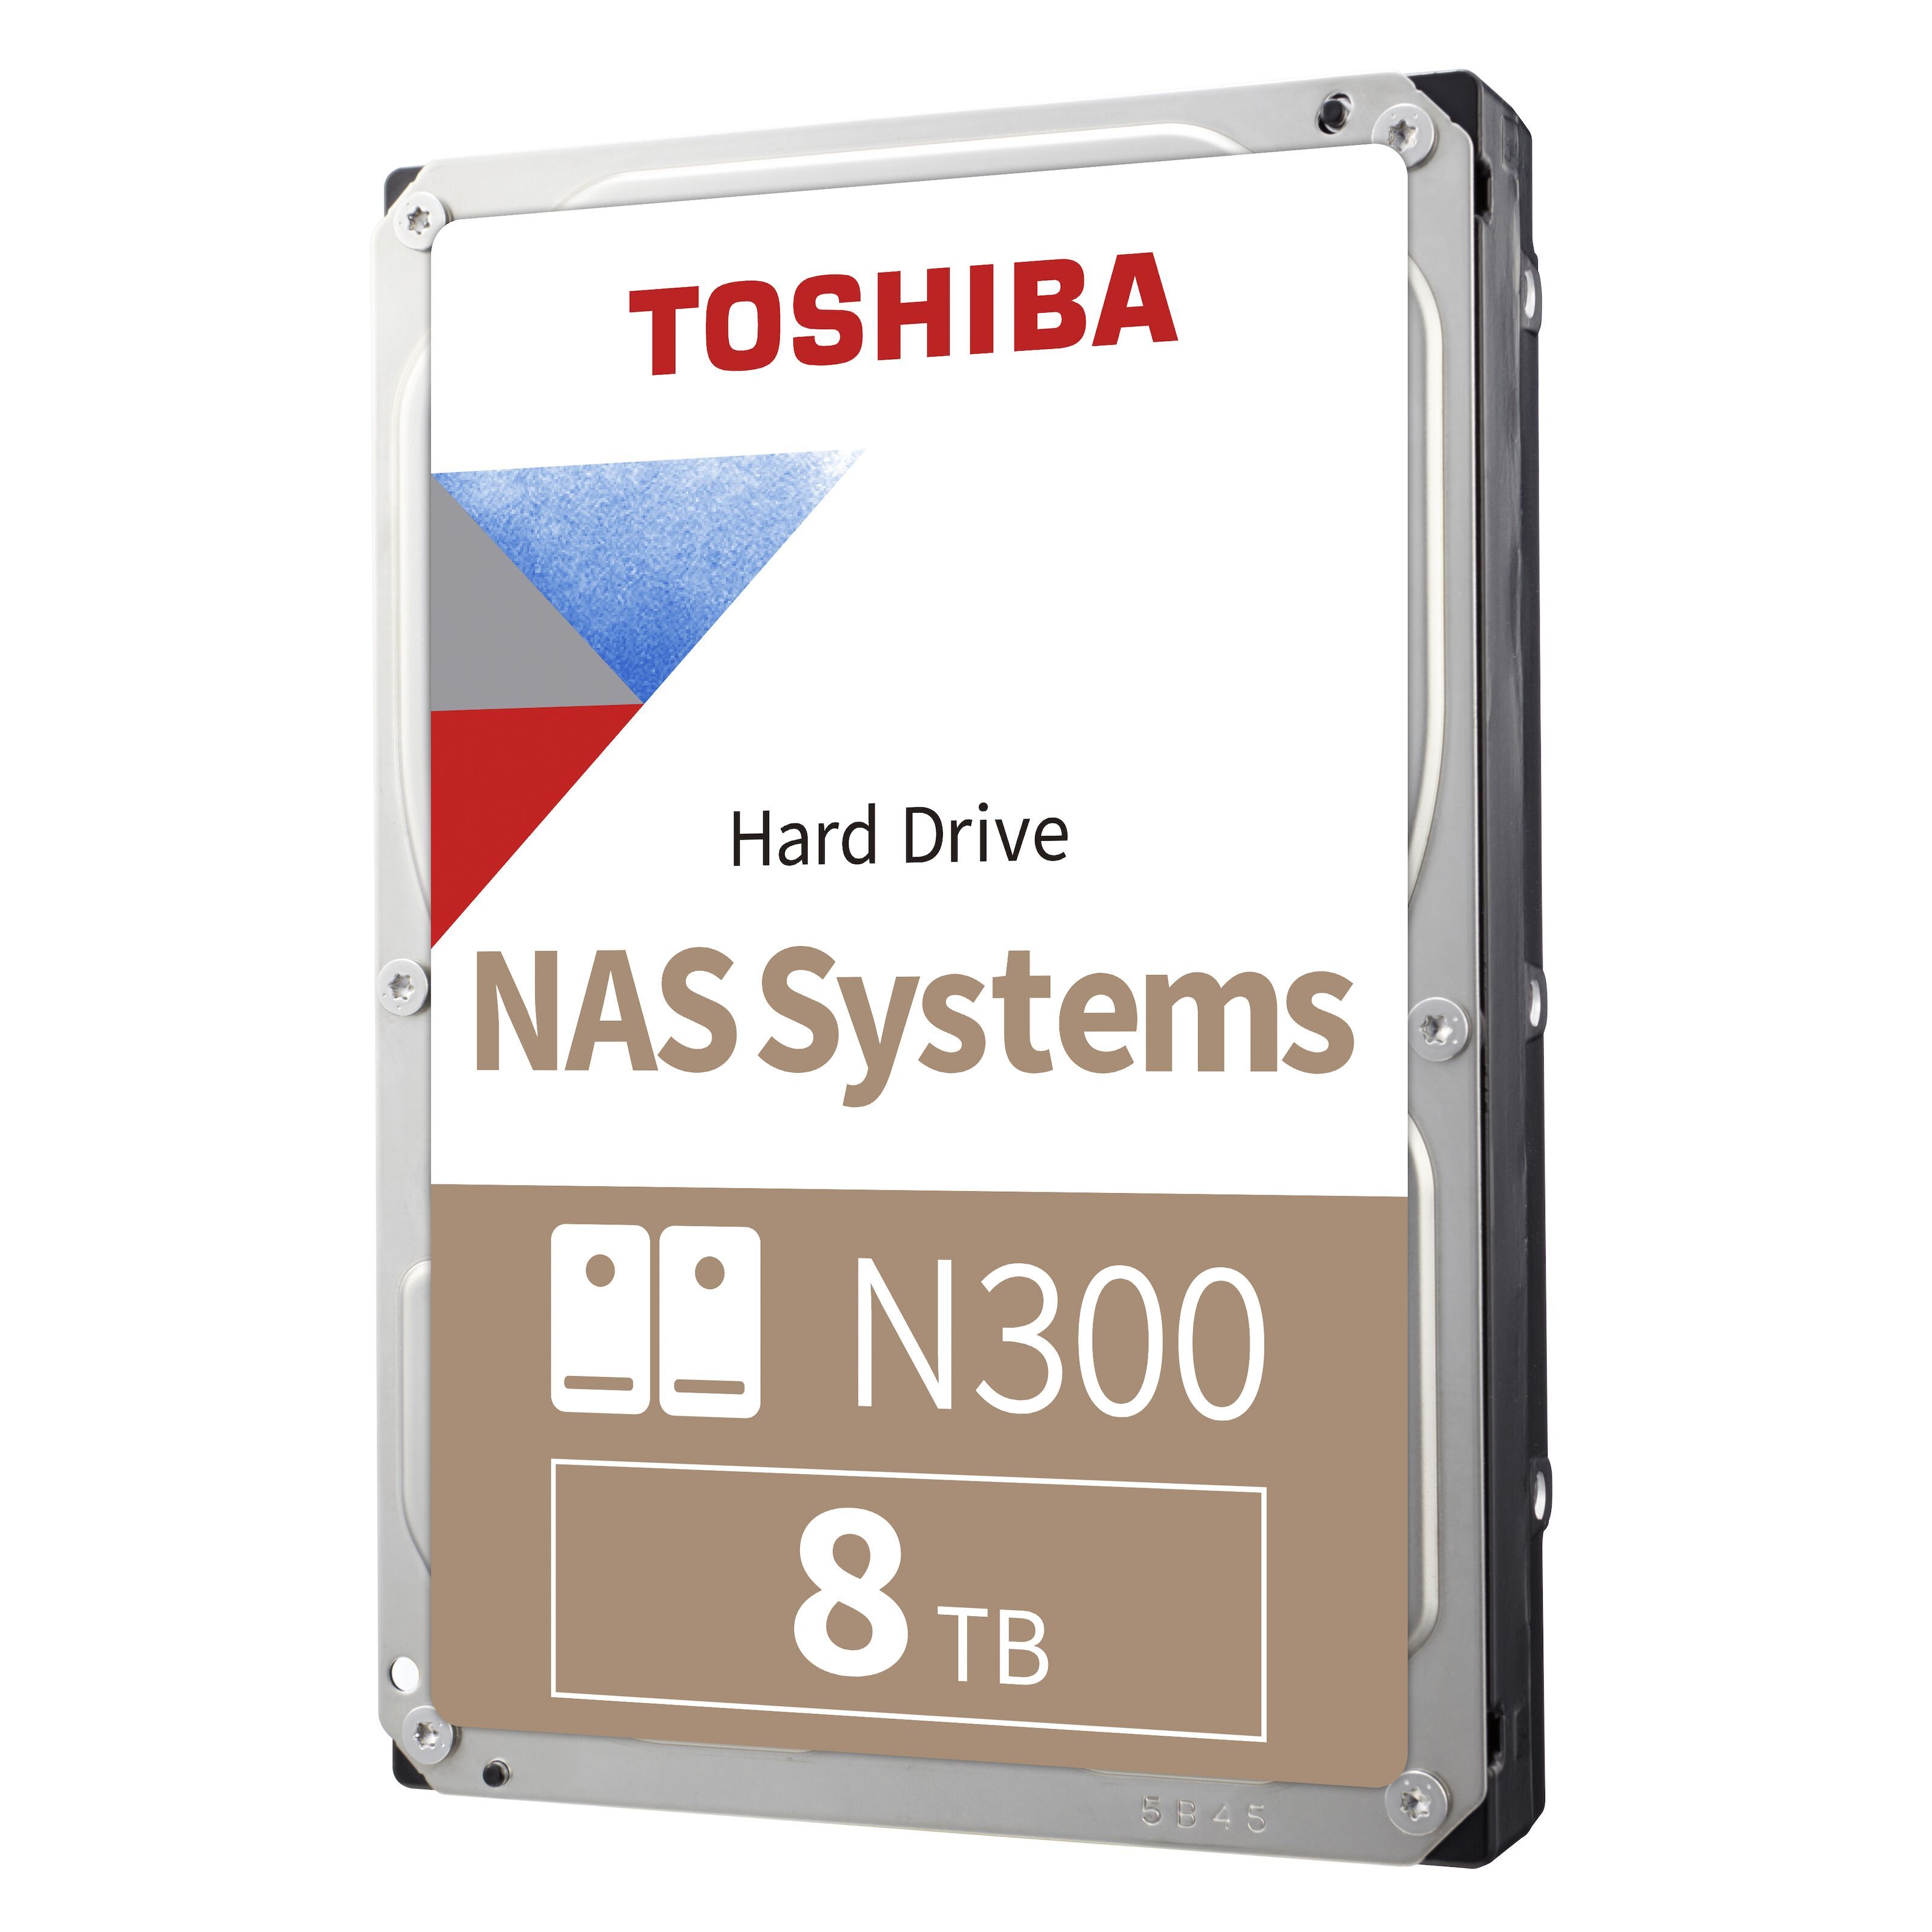 Toshiba N300 8TB NAS